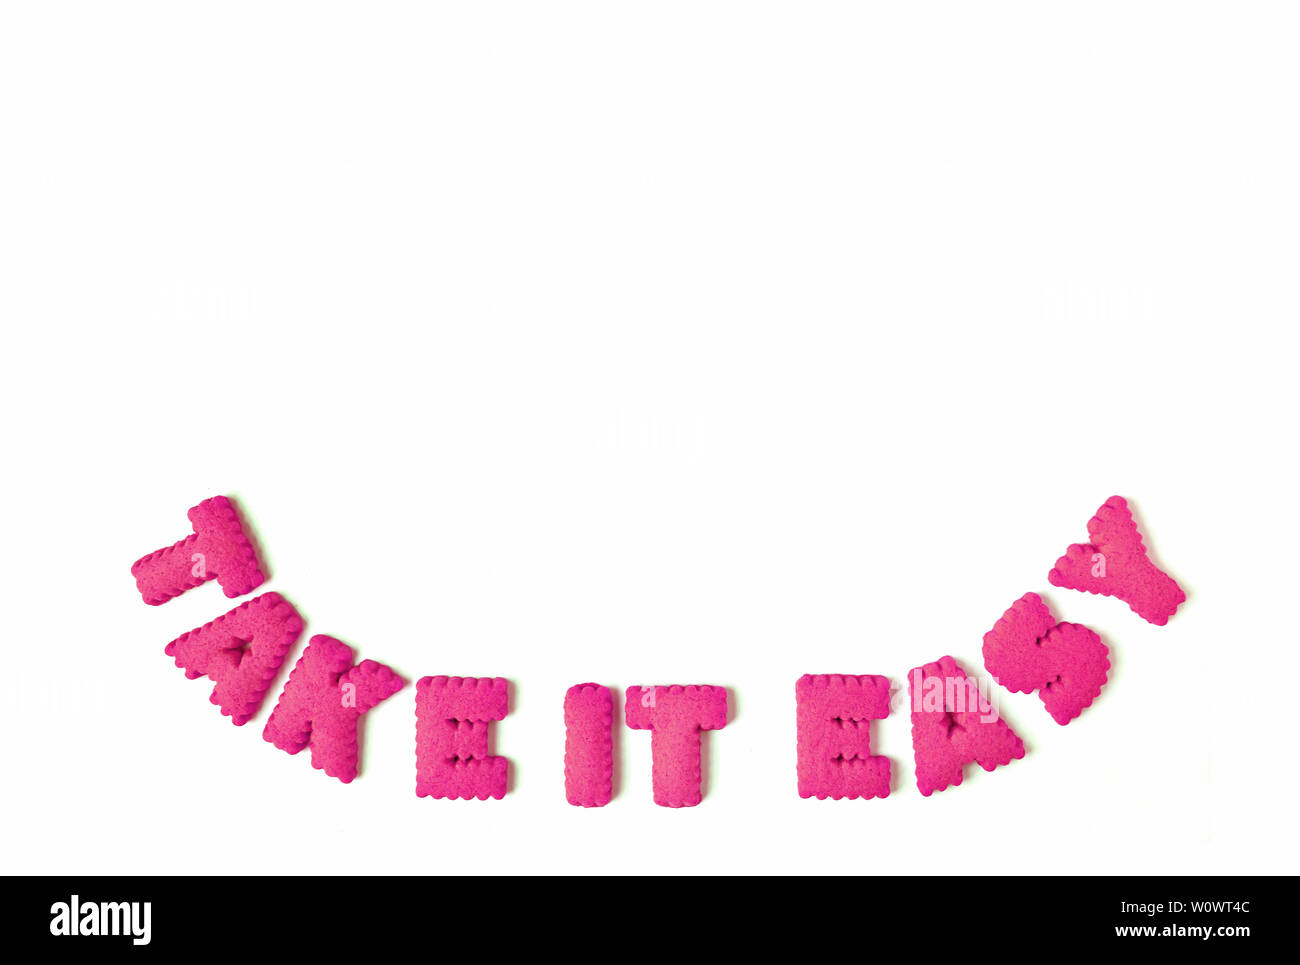 La vibrante rosa a forma di alfabeto cookies l'ortografia della parola Take it easy su sfondo bianco Foto Stock